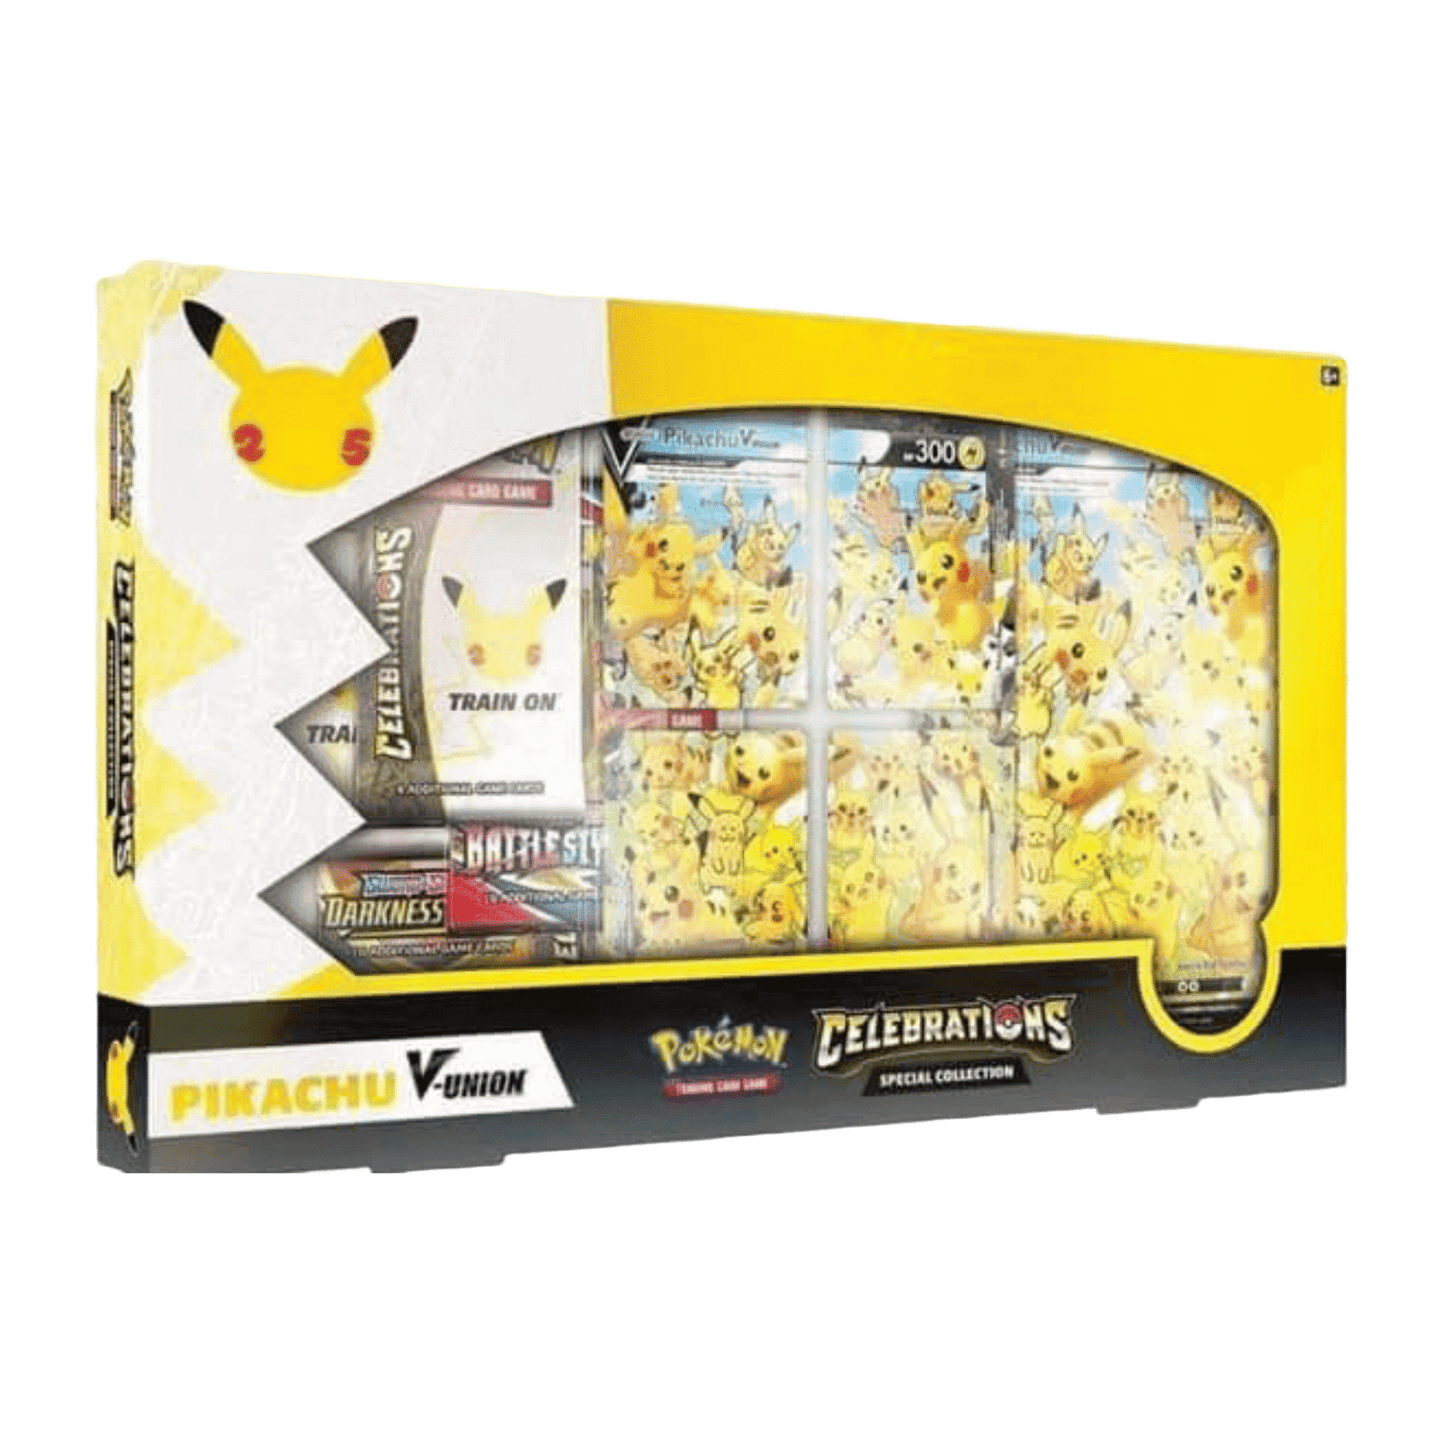 Pokémon: Celebrations Special Collections - Pikachu V-Union